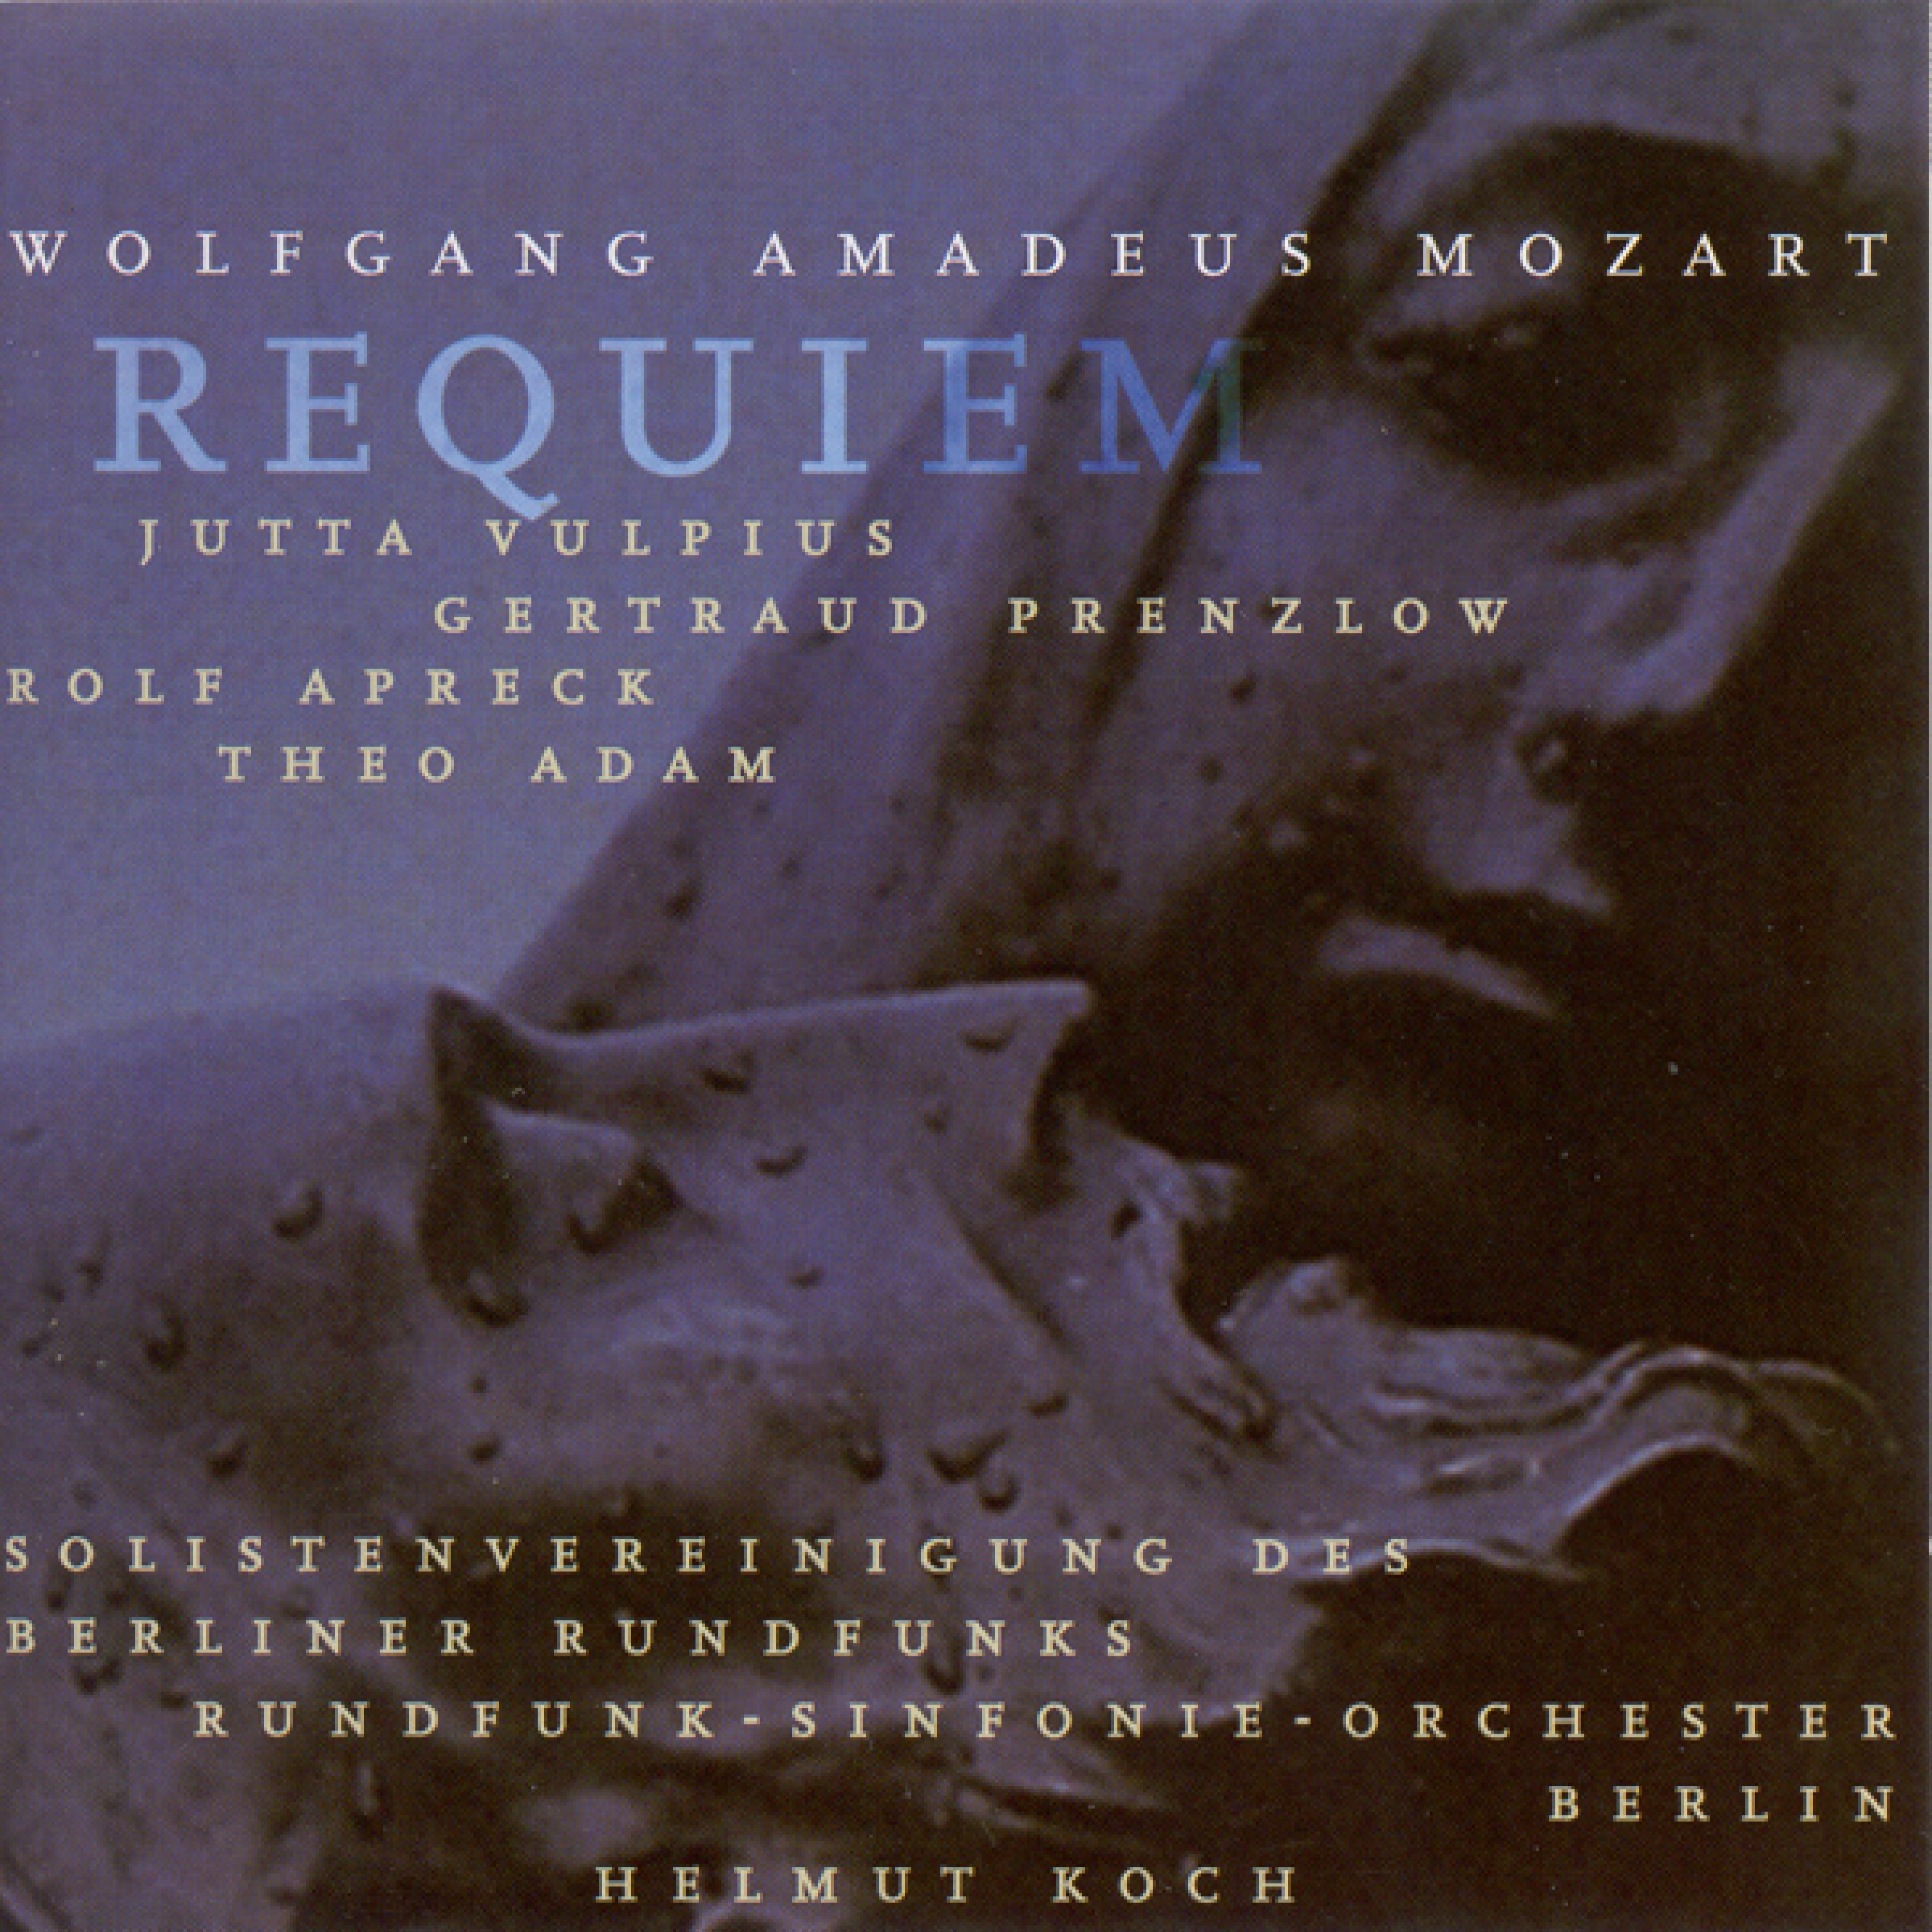 Requiem in D Minor, K. 626: Introit. Requiem aeternam - Kyrie eleison